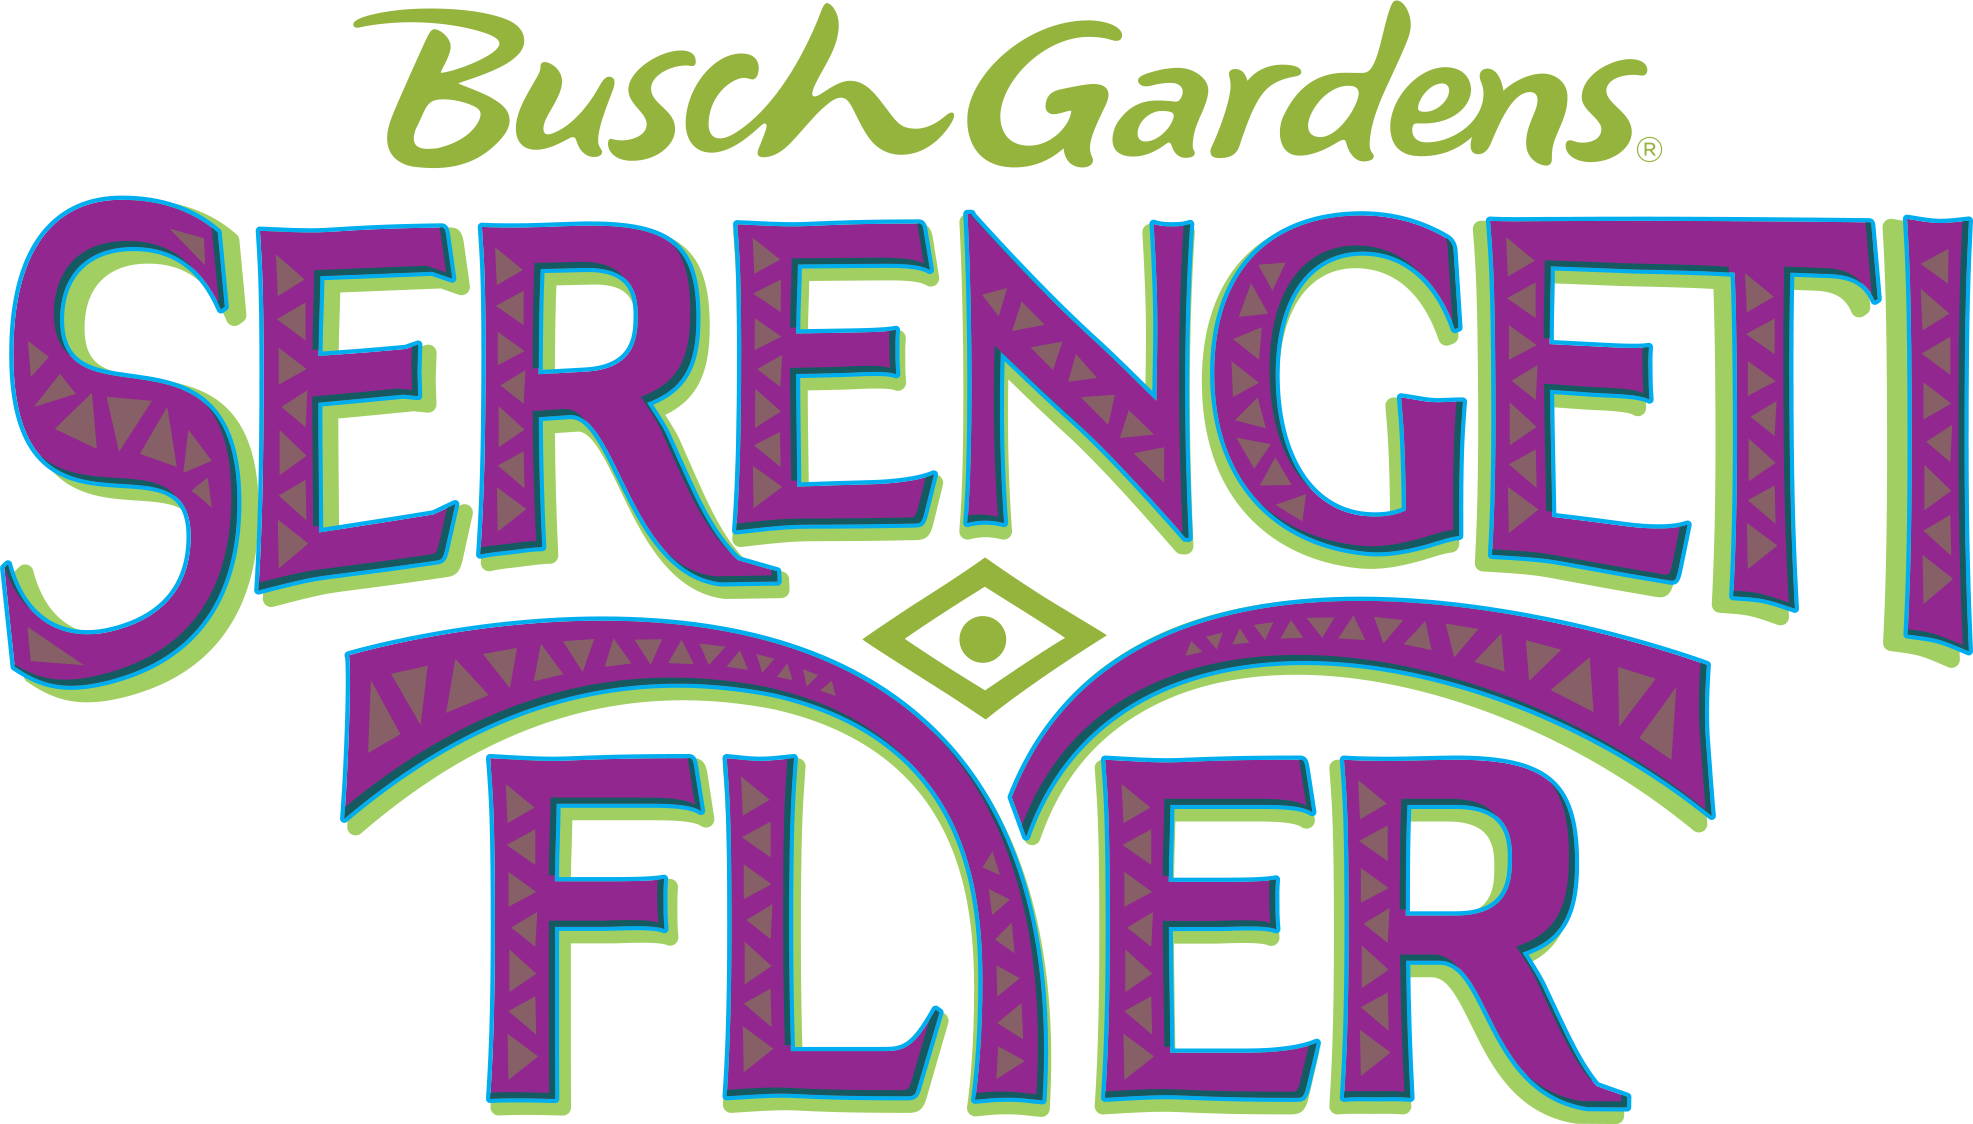 Serengeti Flyer, Busch Gardens